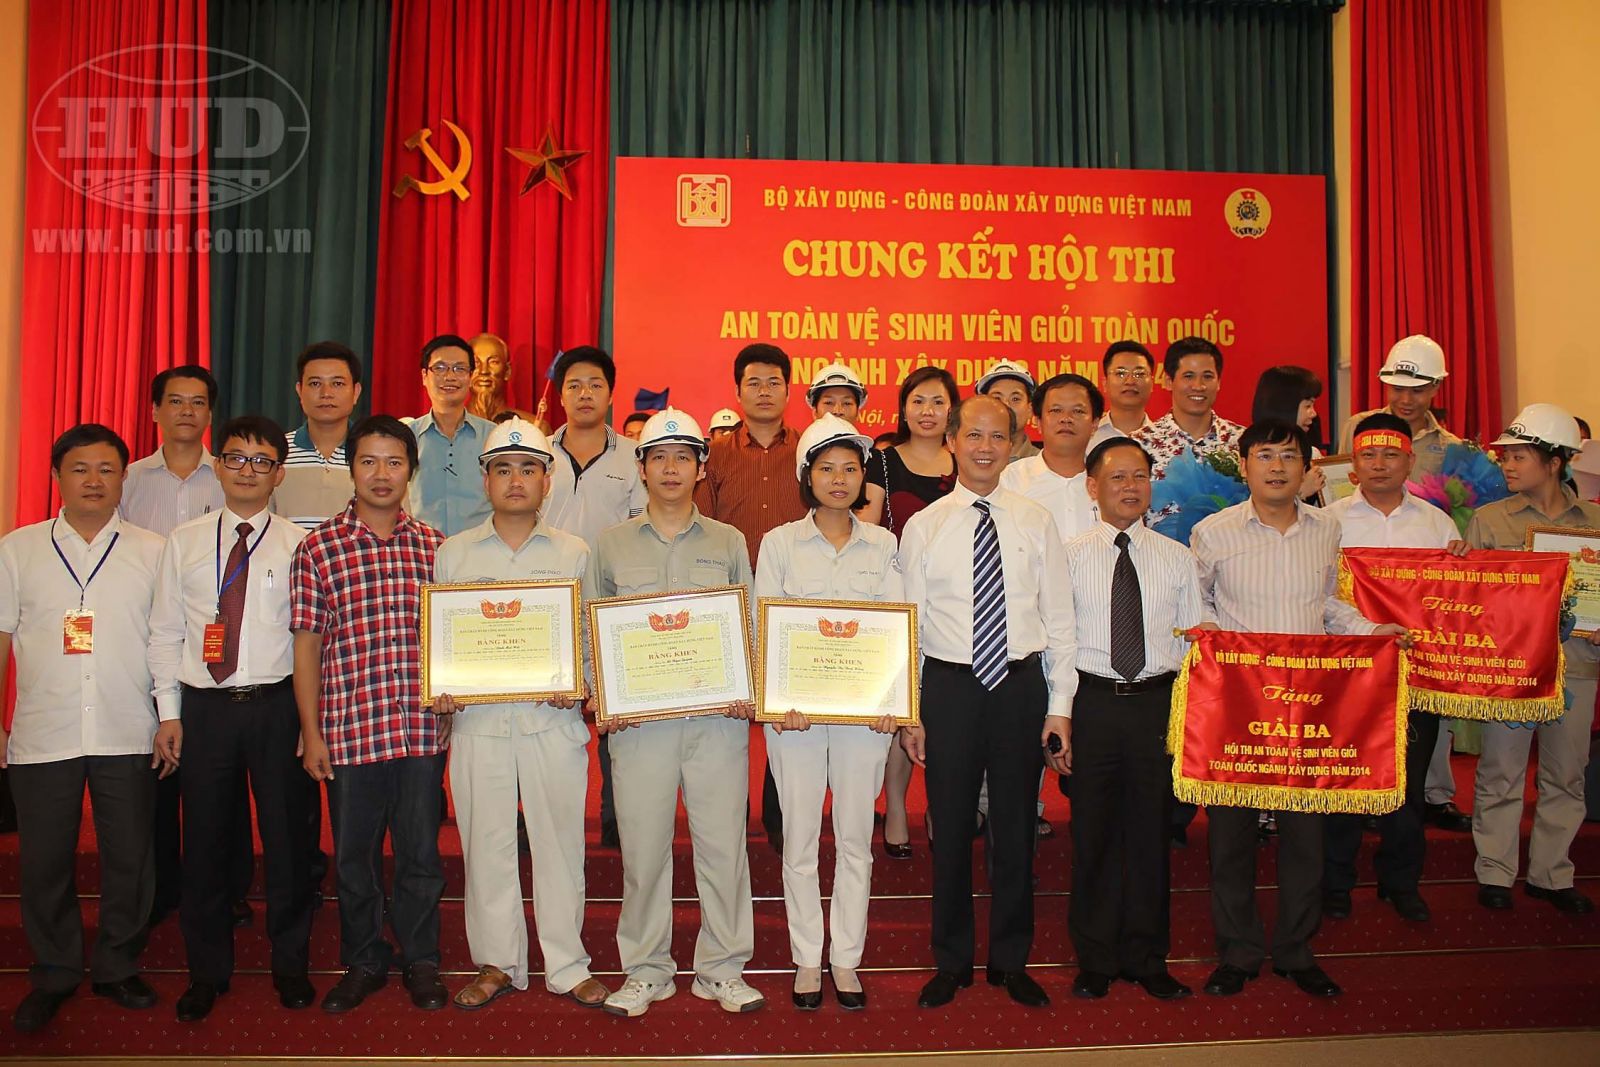 Chung kết “Hội thi An toàn vệ sinh viên giỏi năm 2014”, Công ty CP Xi măng Sông Thao - Tổng công ty HUD đạt giải Ba